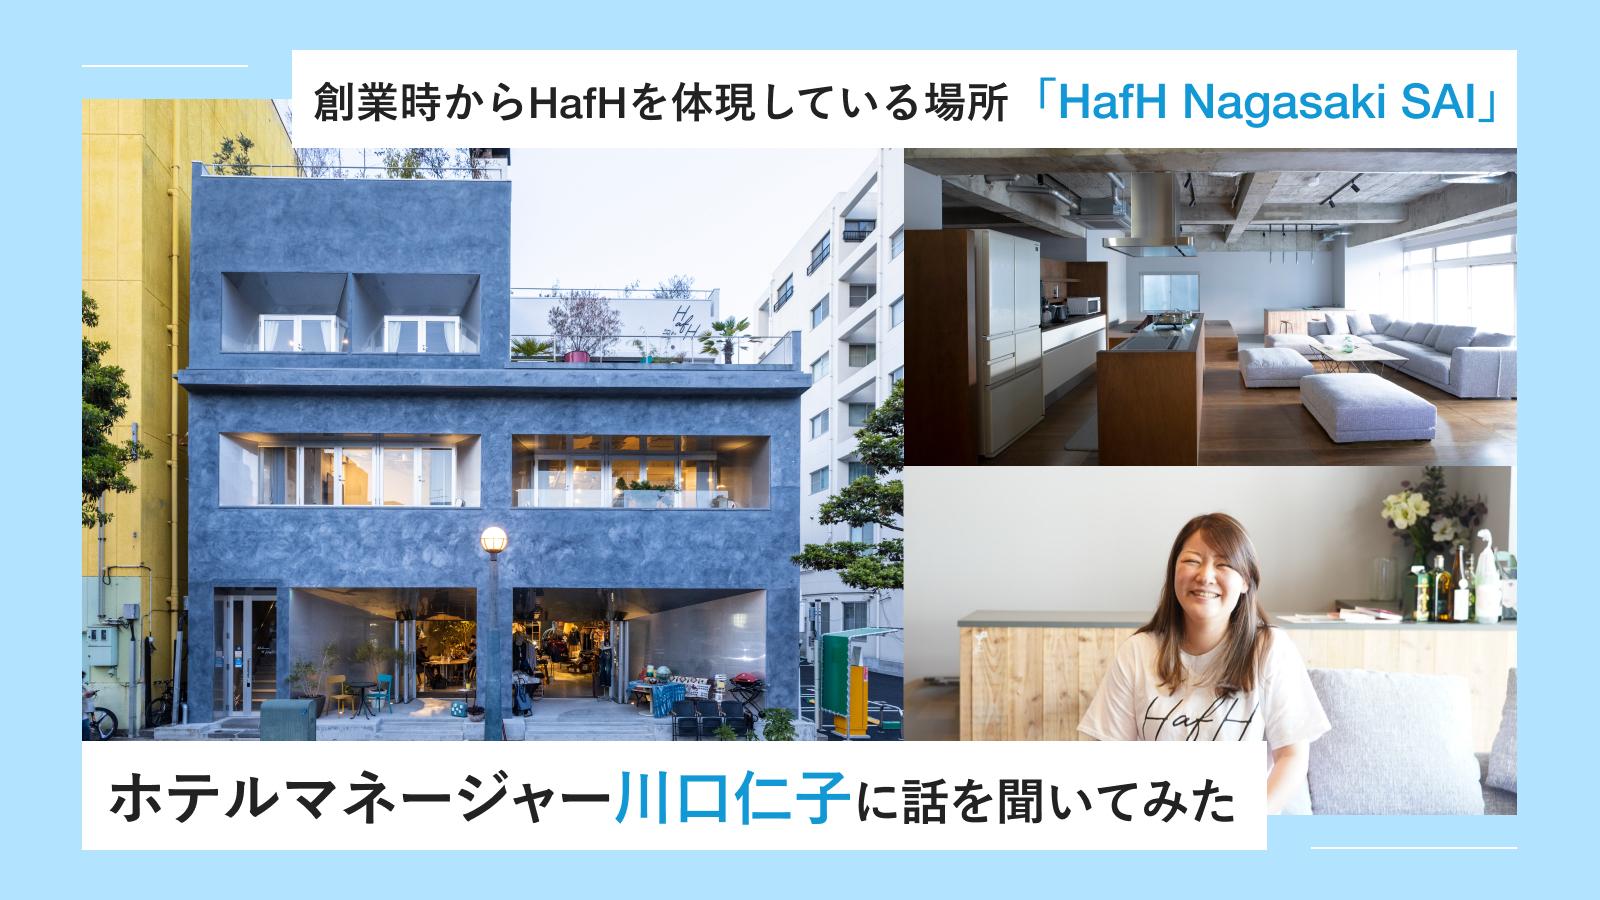 創業時からHafHを体現している場所「HafH Nagasaki SAI」ホテルマネージャー川口仁子に話を聞いてみた